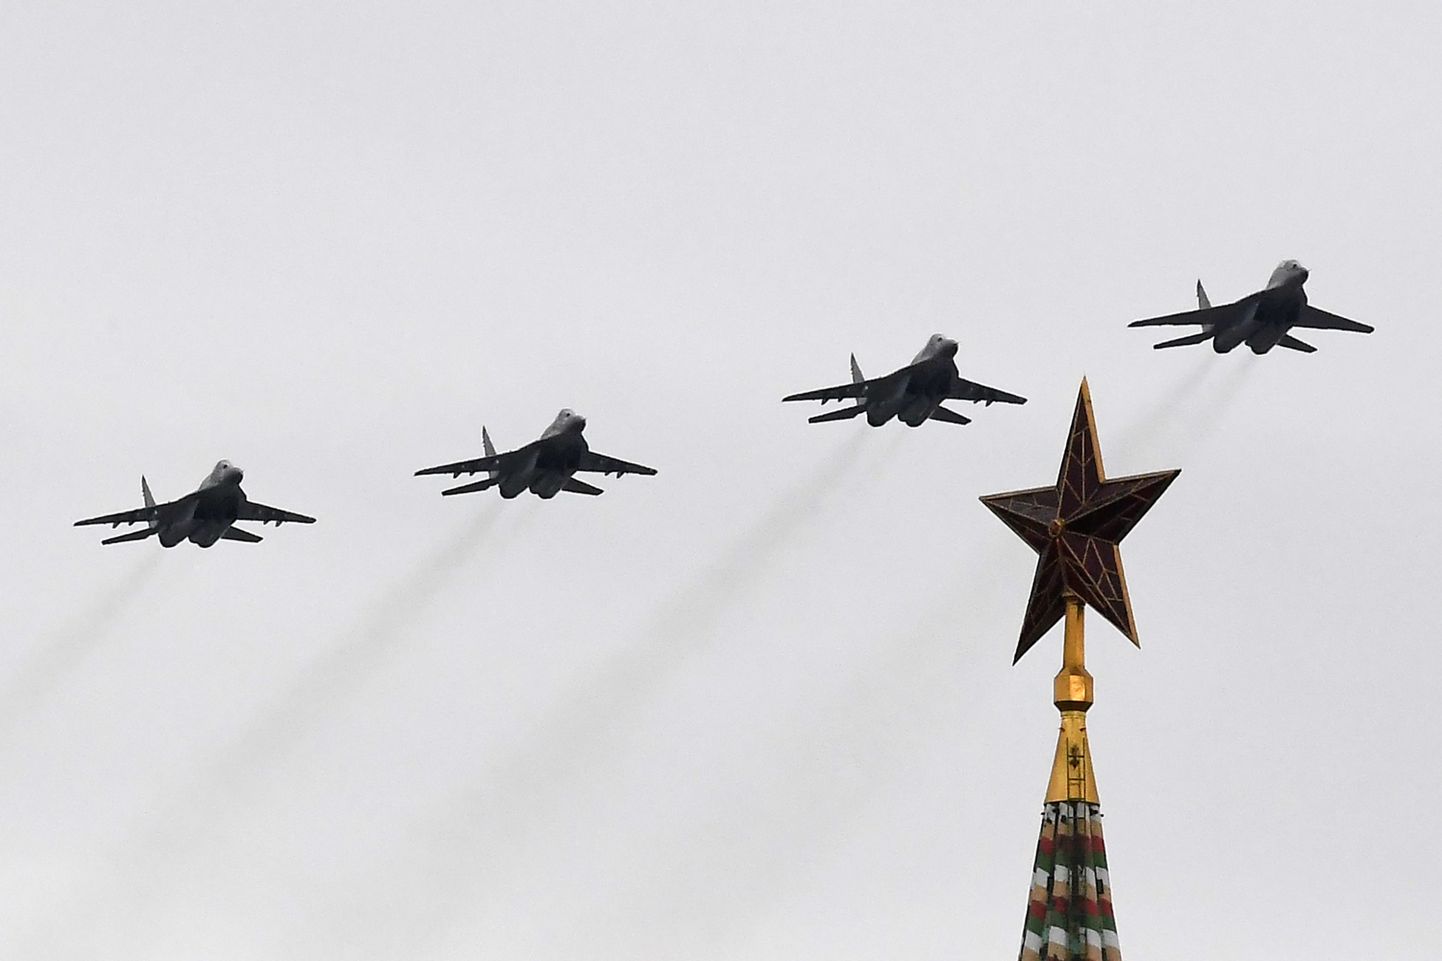 Sõjalennukite ülelend Moskvast jäi Venemaa võidupäevapidustuste ainsaks jõudemonstratsiooniks.